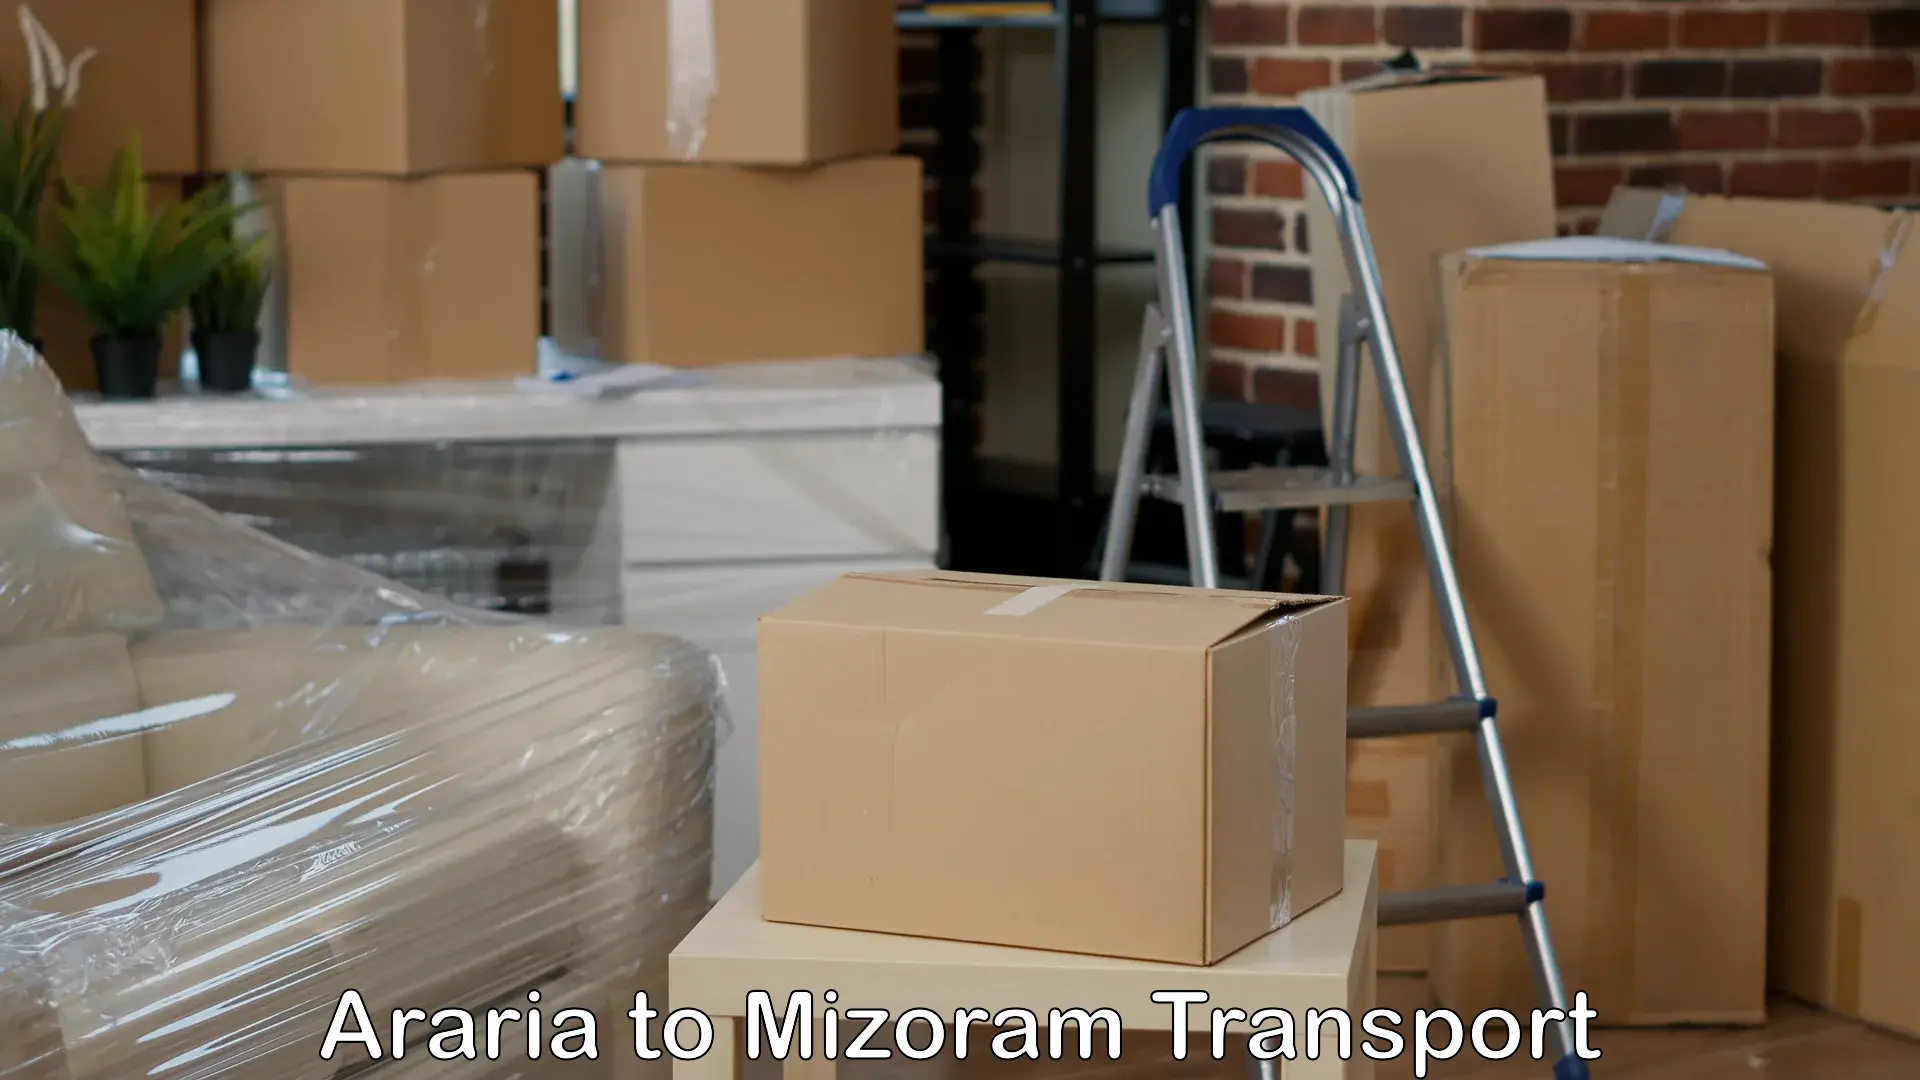 Truck transport companies in India Araria to Mizoram